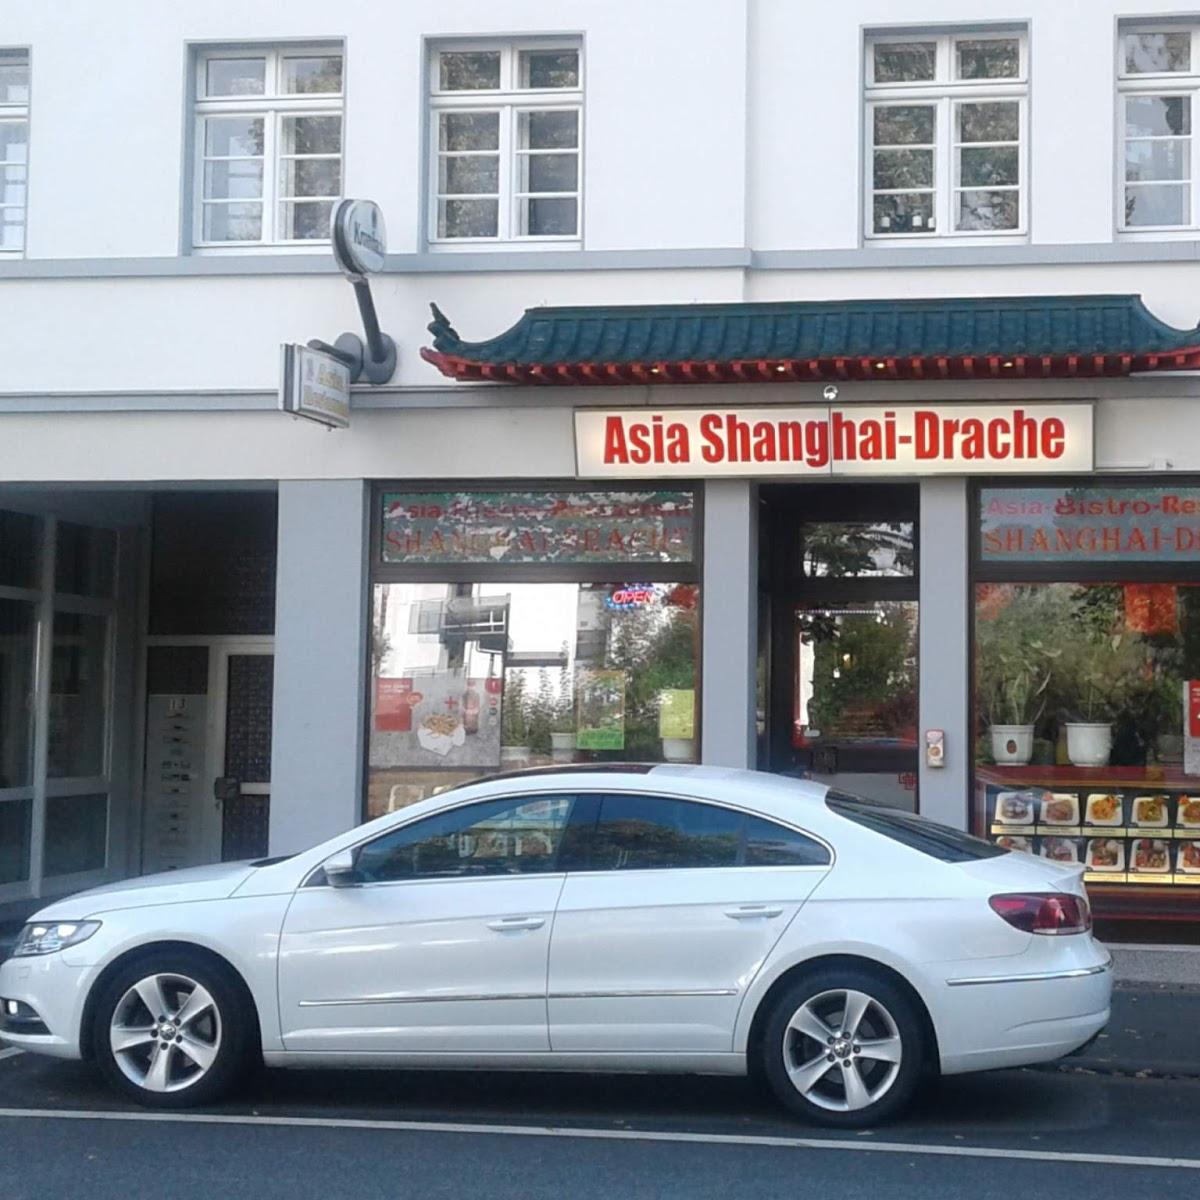 Restaurant "Asia Shanghai Drachen Restaurant & Bistro" in  Herborn